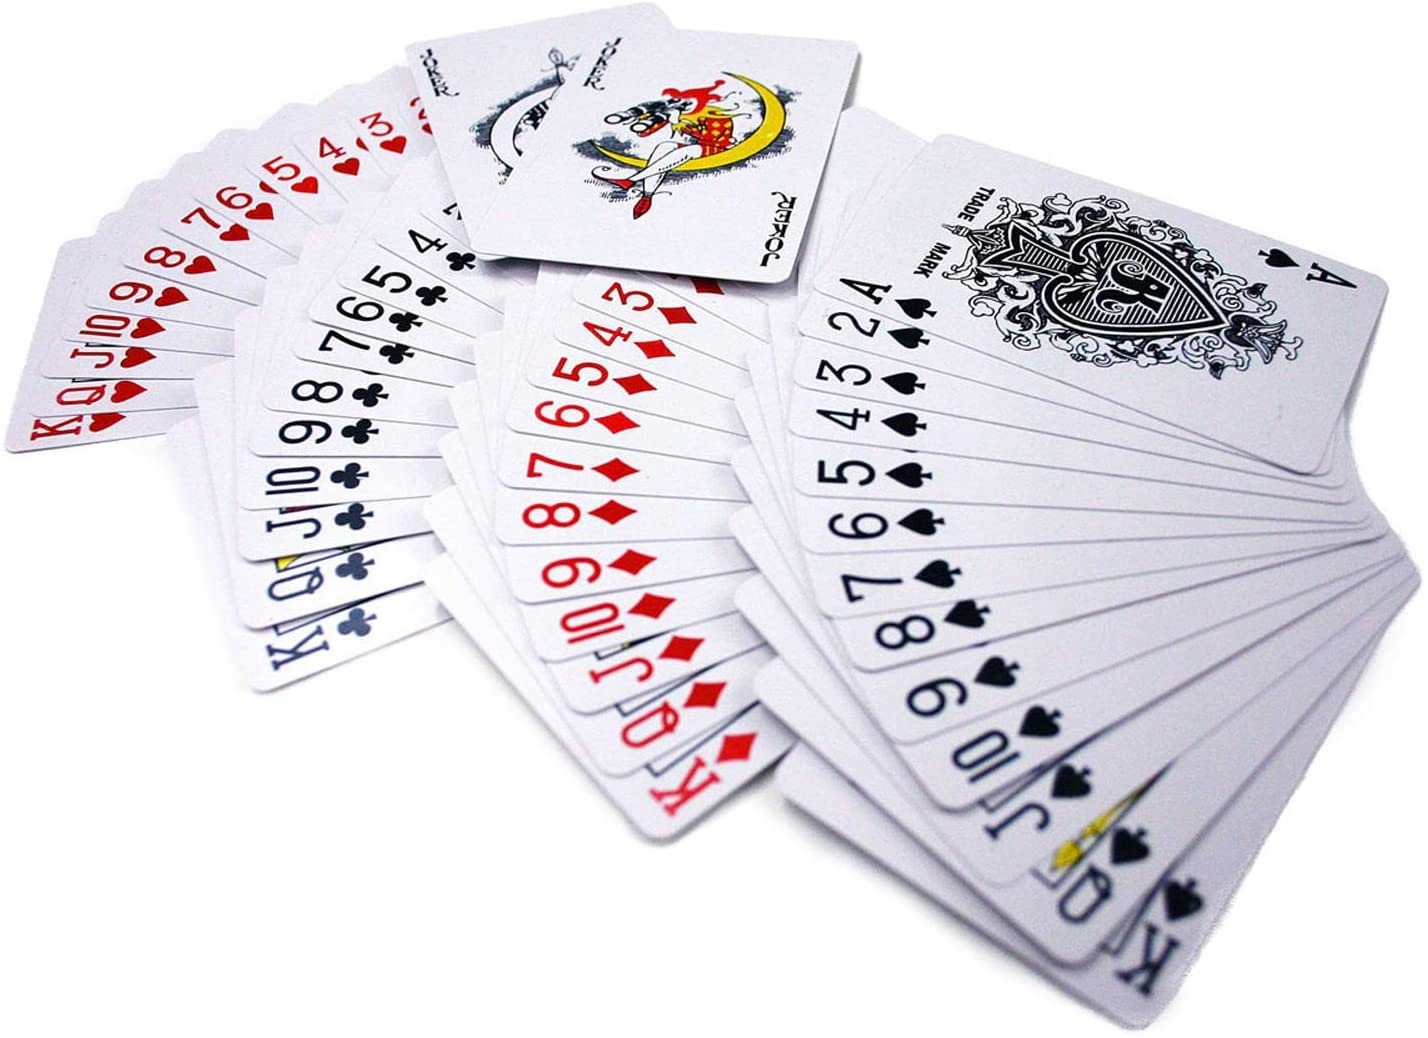 52 игральных карты. Покер карты. Карты игральные пластиковые. Колода карт 52. Игральная колода 52 карты.